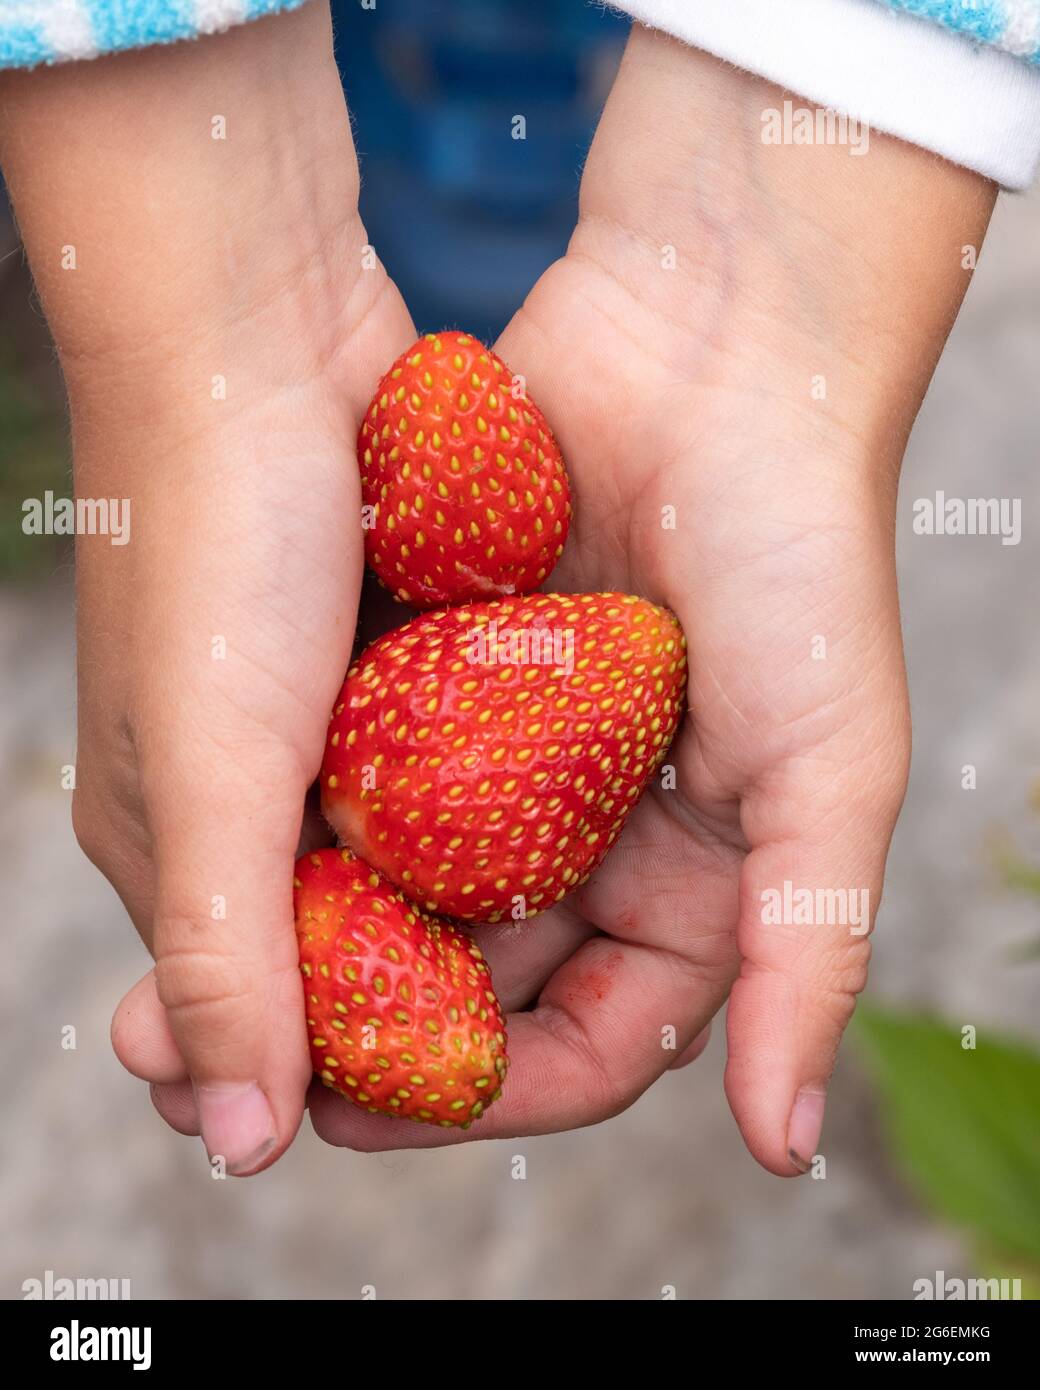 Kinderhände mit großen frischen reifen roten Erdbeeren, Nahaufnahme. Vegetarische Ernährung. Stockfoto